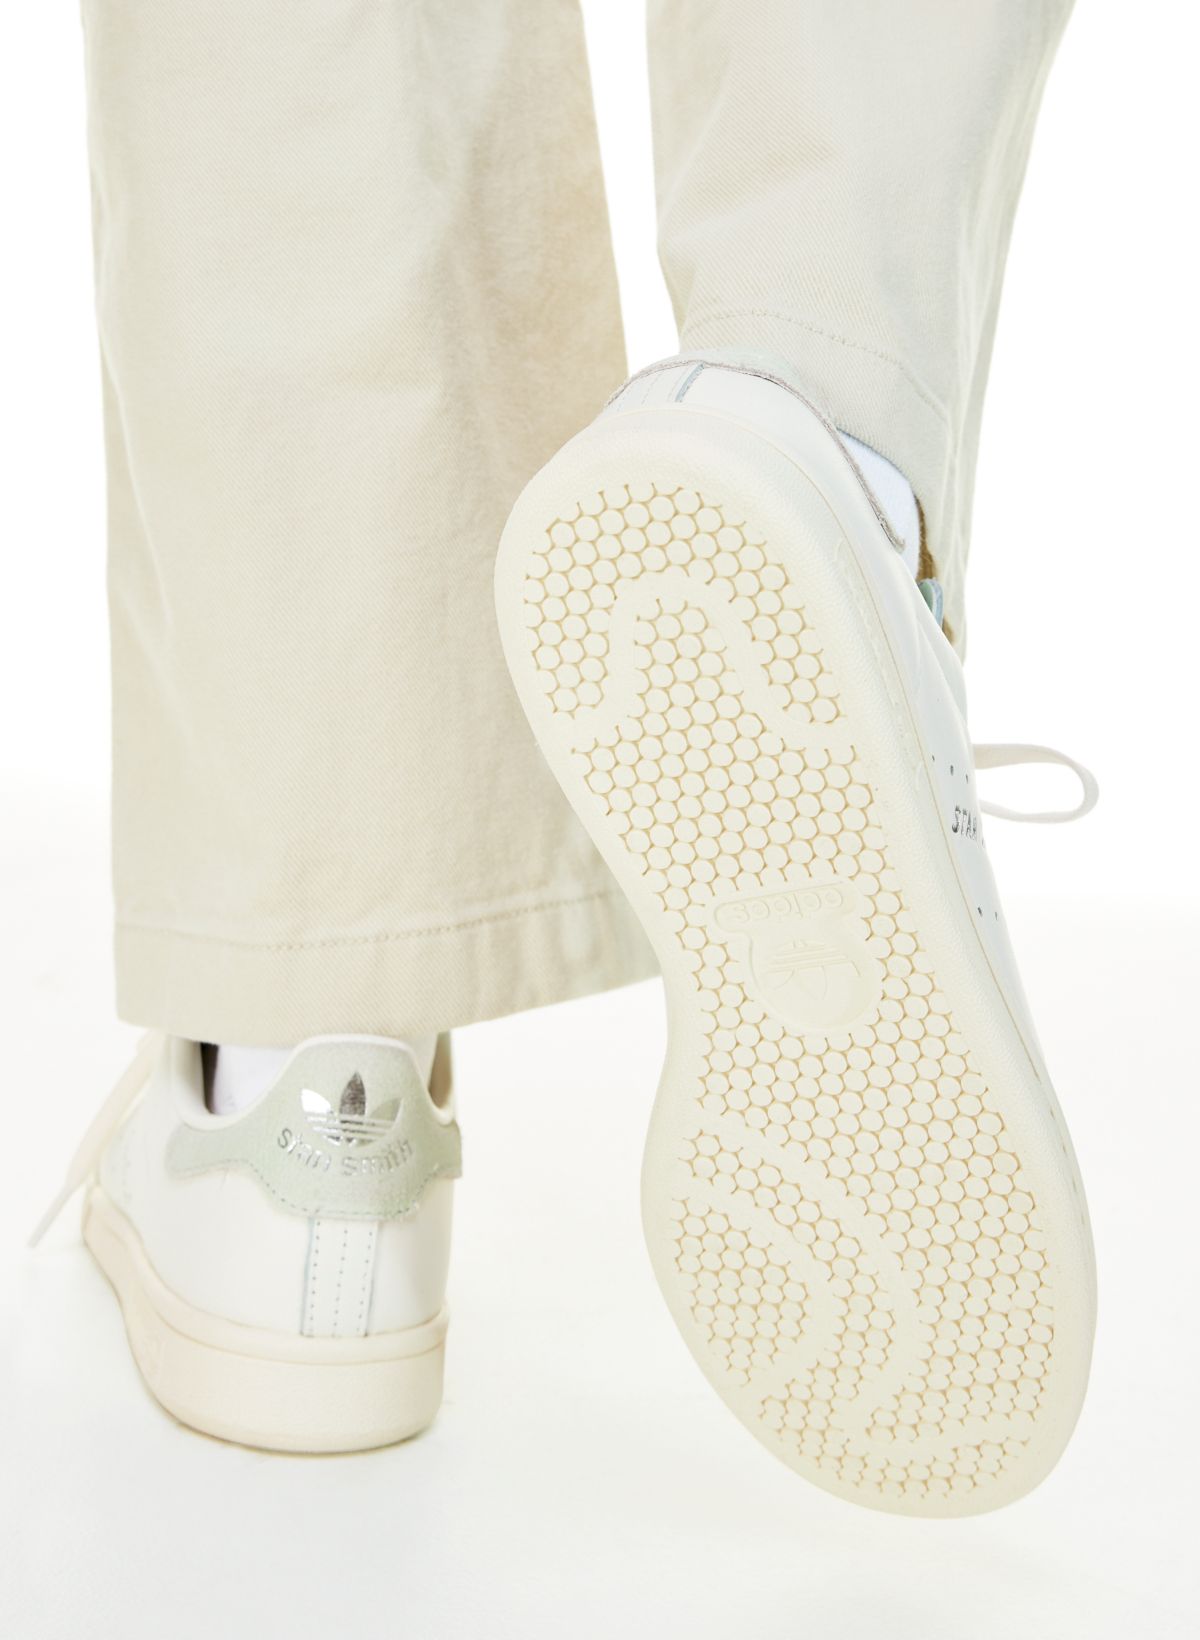 Adidas Stan Smith Shoes Triple White Size US 7 Mens Premium